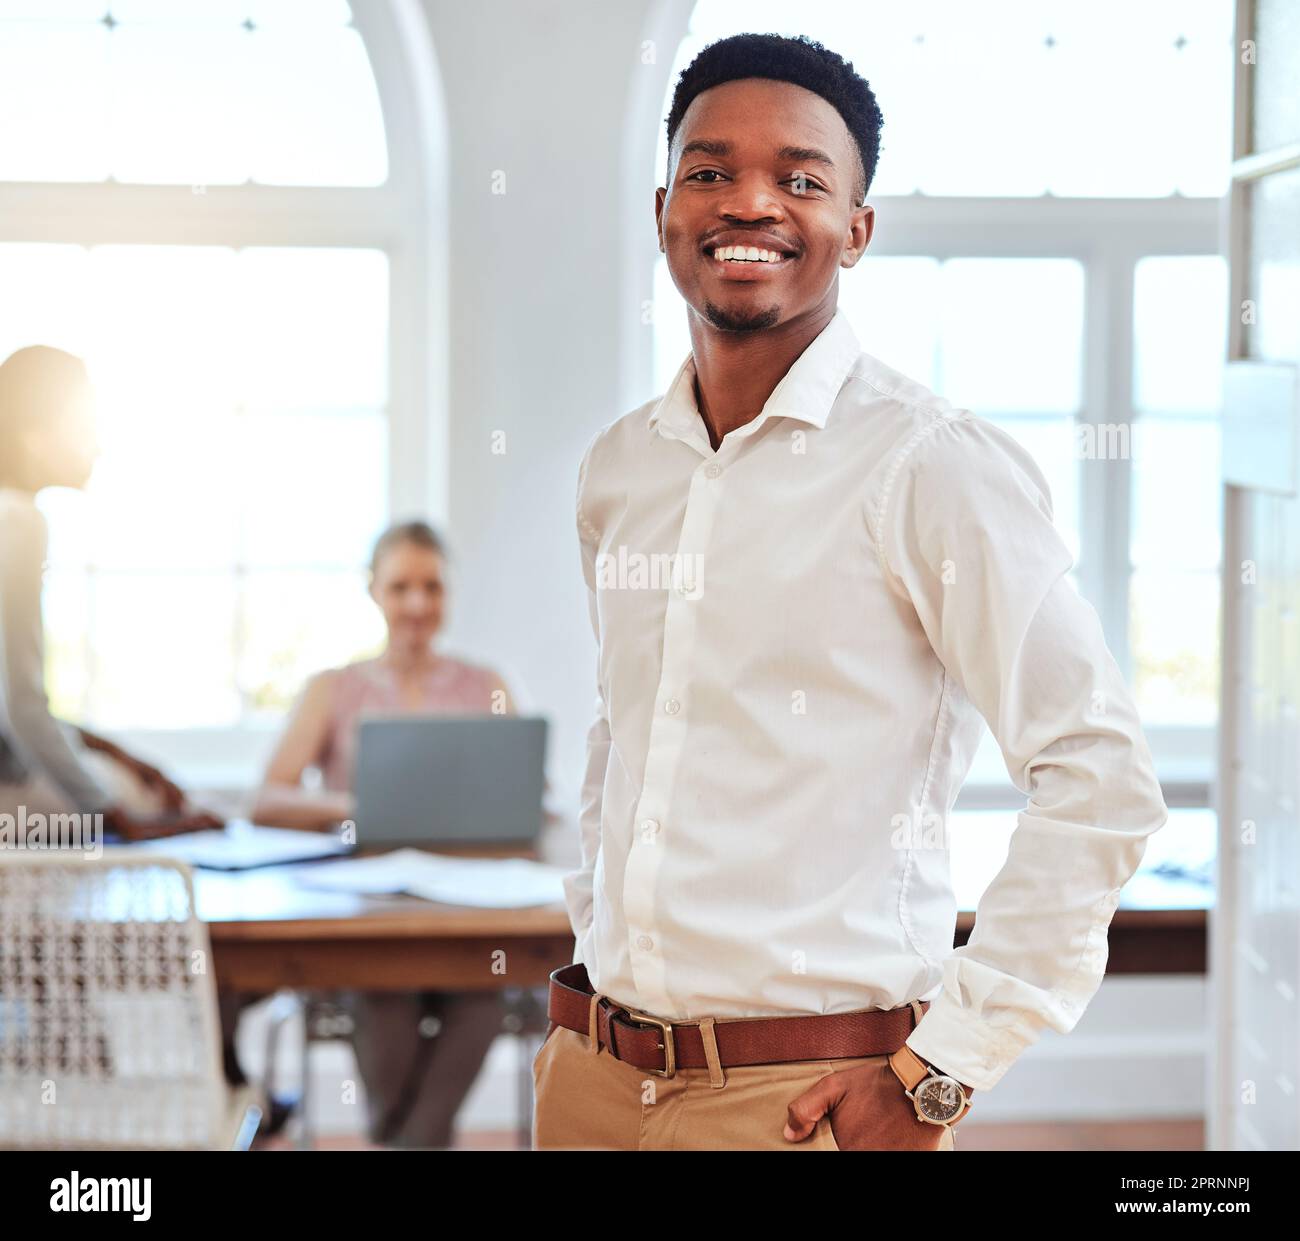 Homme noir, entreprise et portrait de leader lors d'une réunion avec un sourire pour le succès et un leadership fier au bureau. Heureux et confiant Ameri africain Banque D'Images